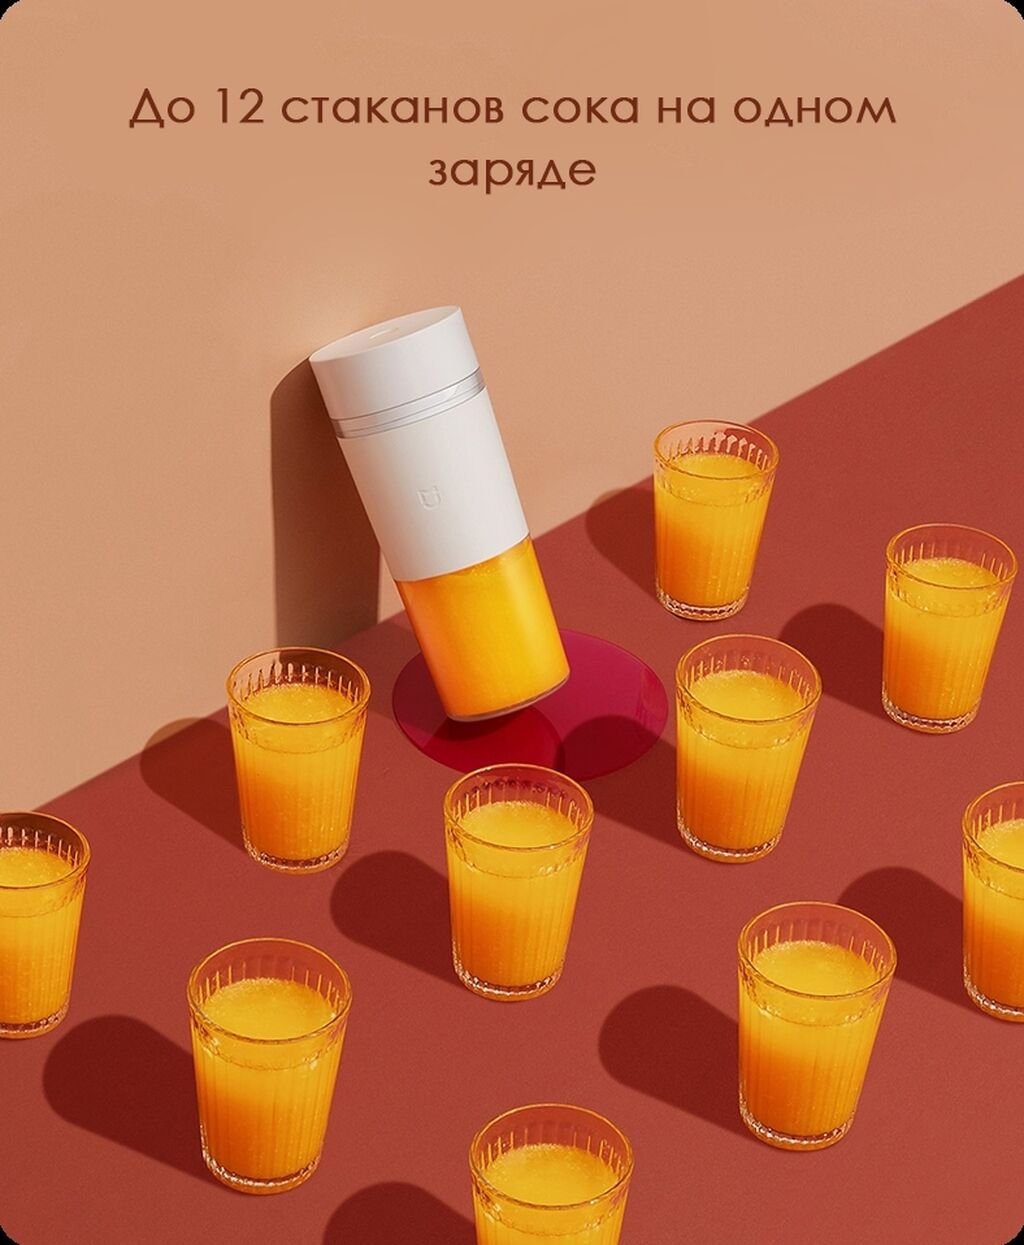 Xiaomi juicer cup